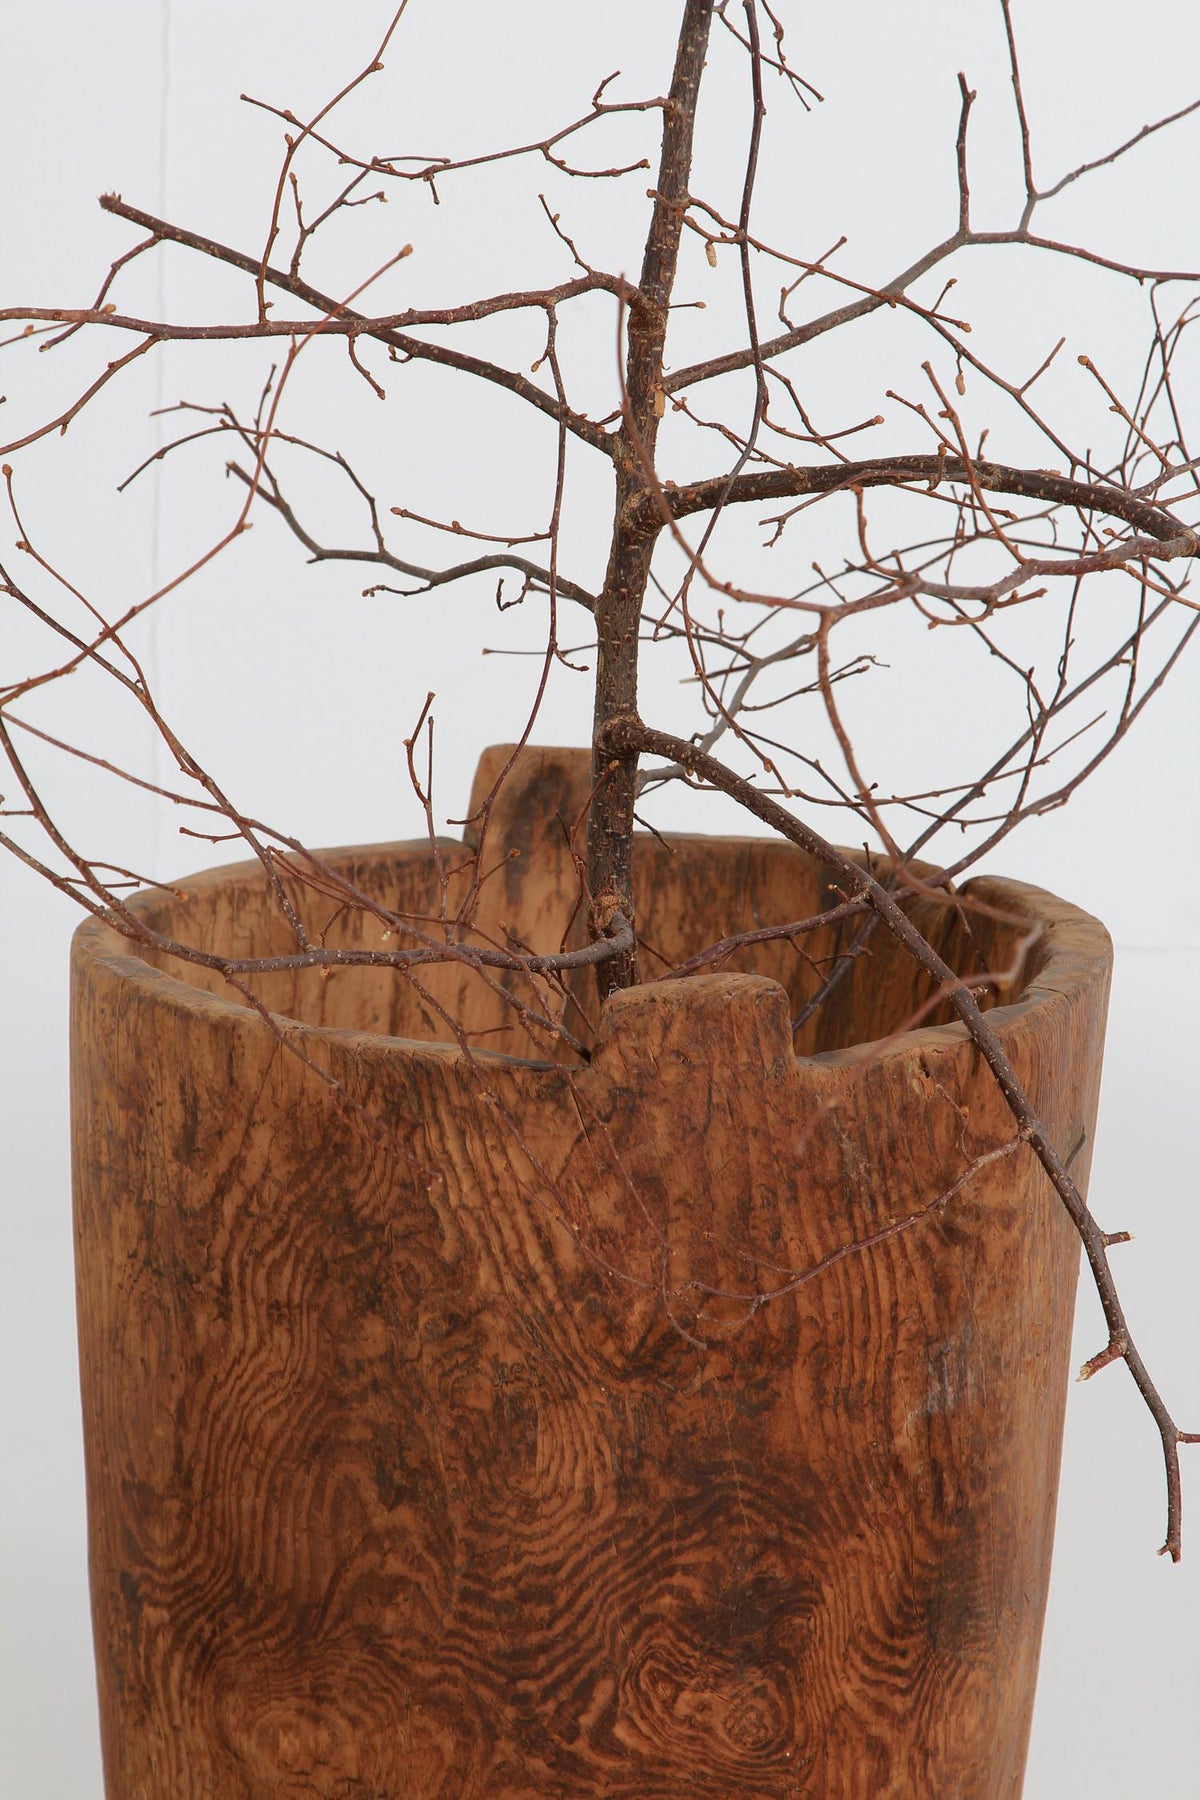 Rustic & Sculptural Japanese Wabi-Sabi  Dug Out Tree Trunk Barrel